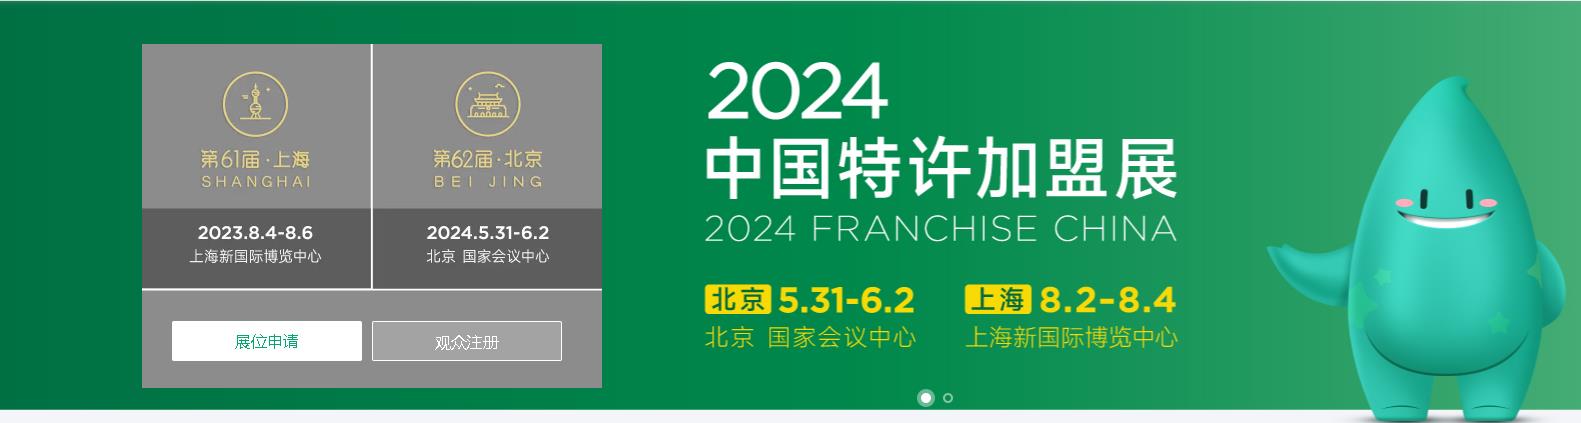 2024中国（北京）特许加盟展—5月31日开幕